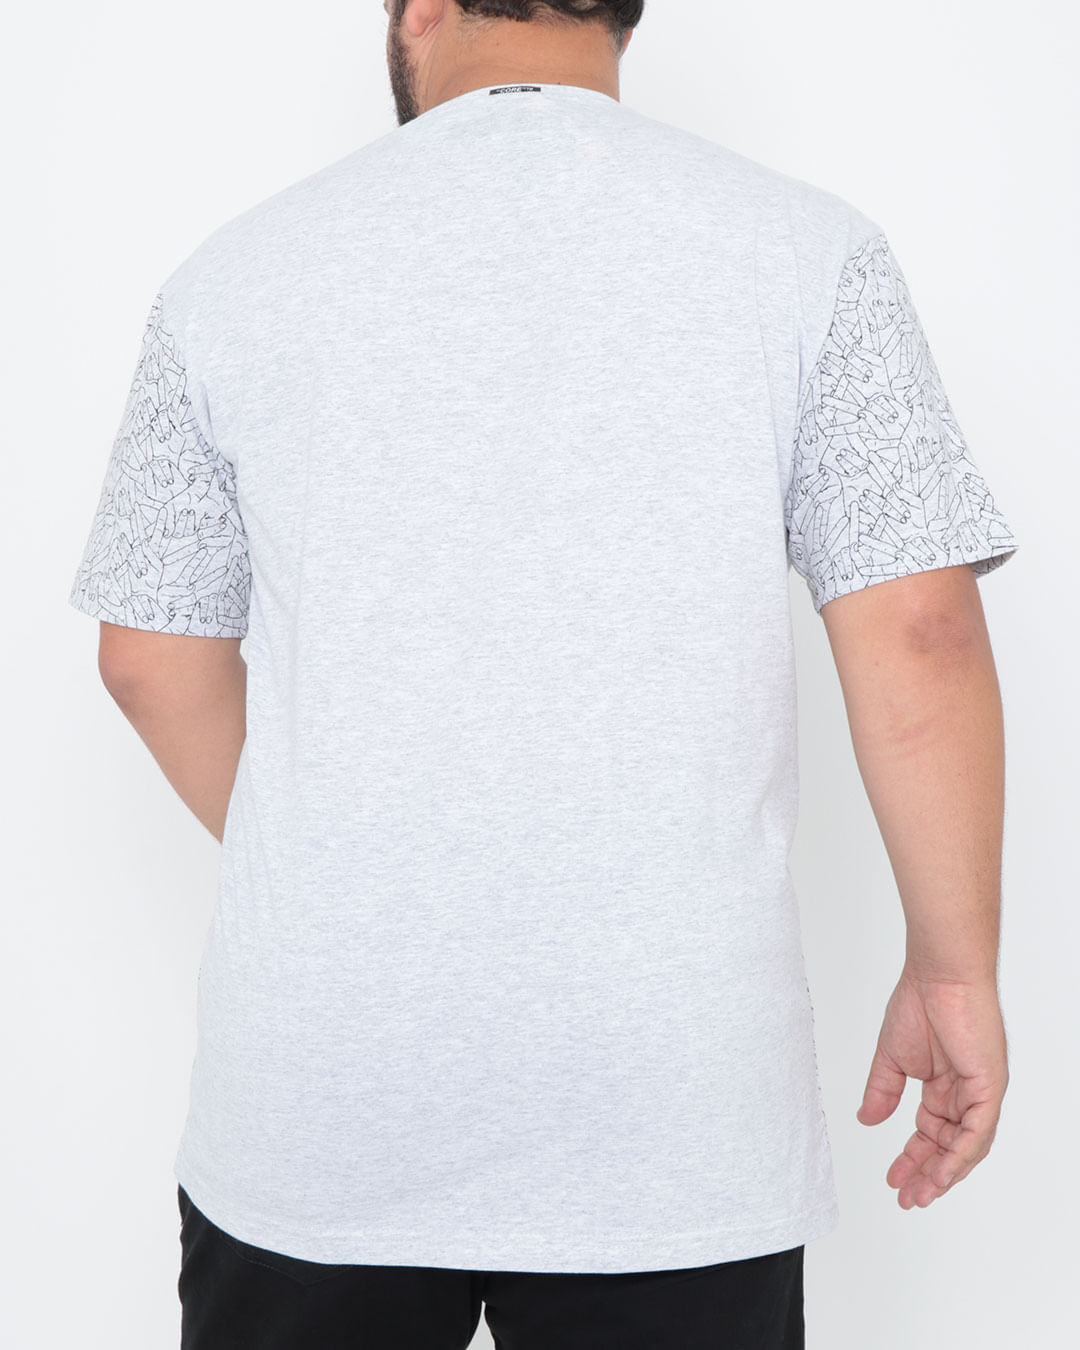 Camiseta-Plus-Size-Manga-Curta-Estampada-Cinza